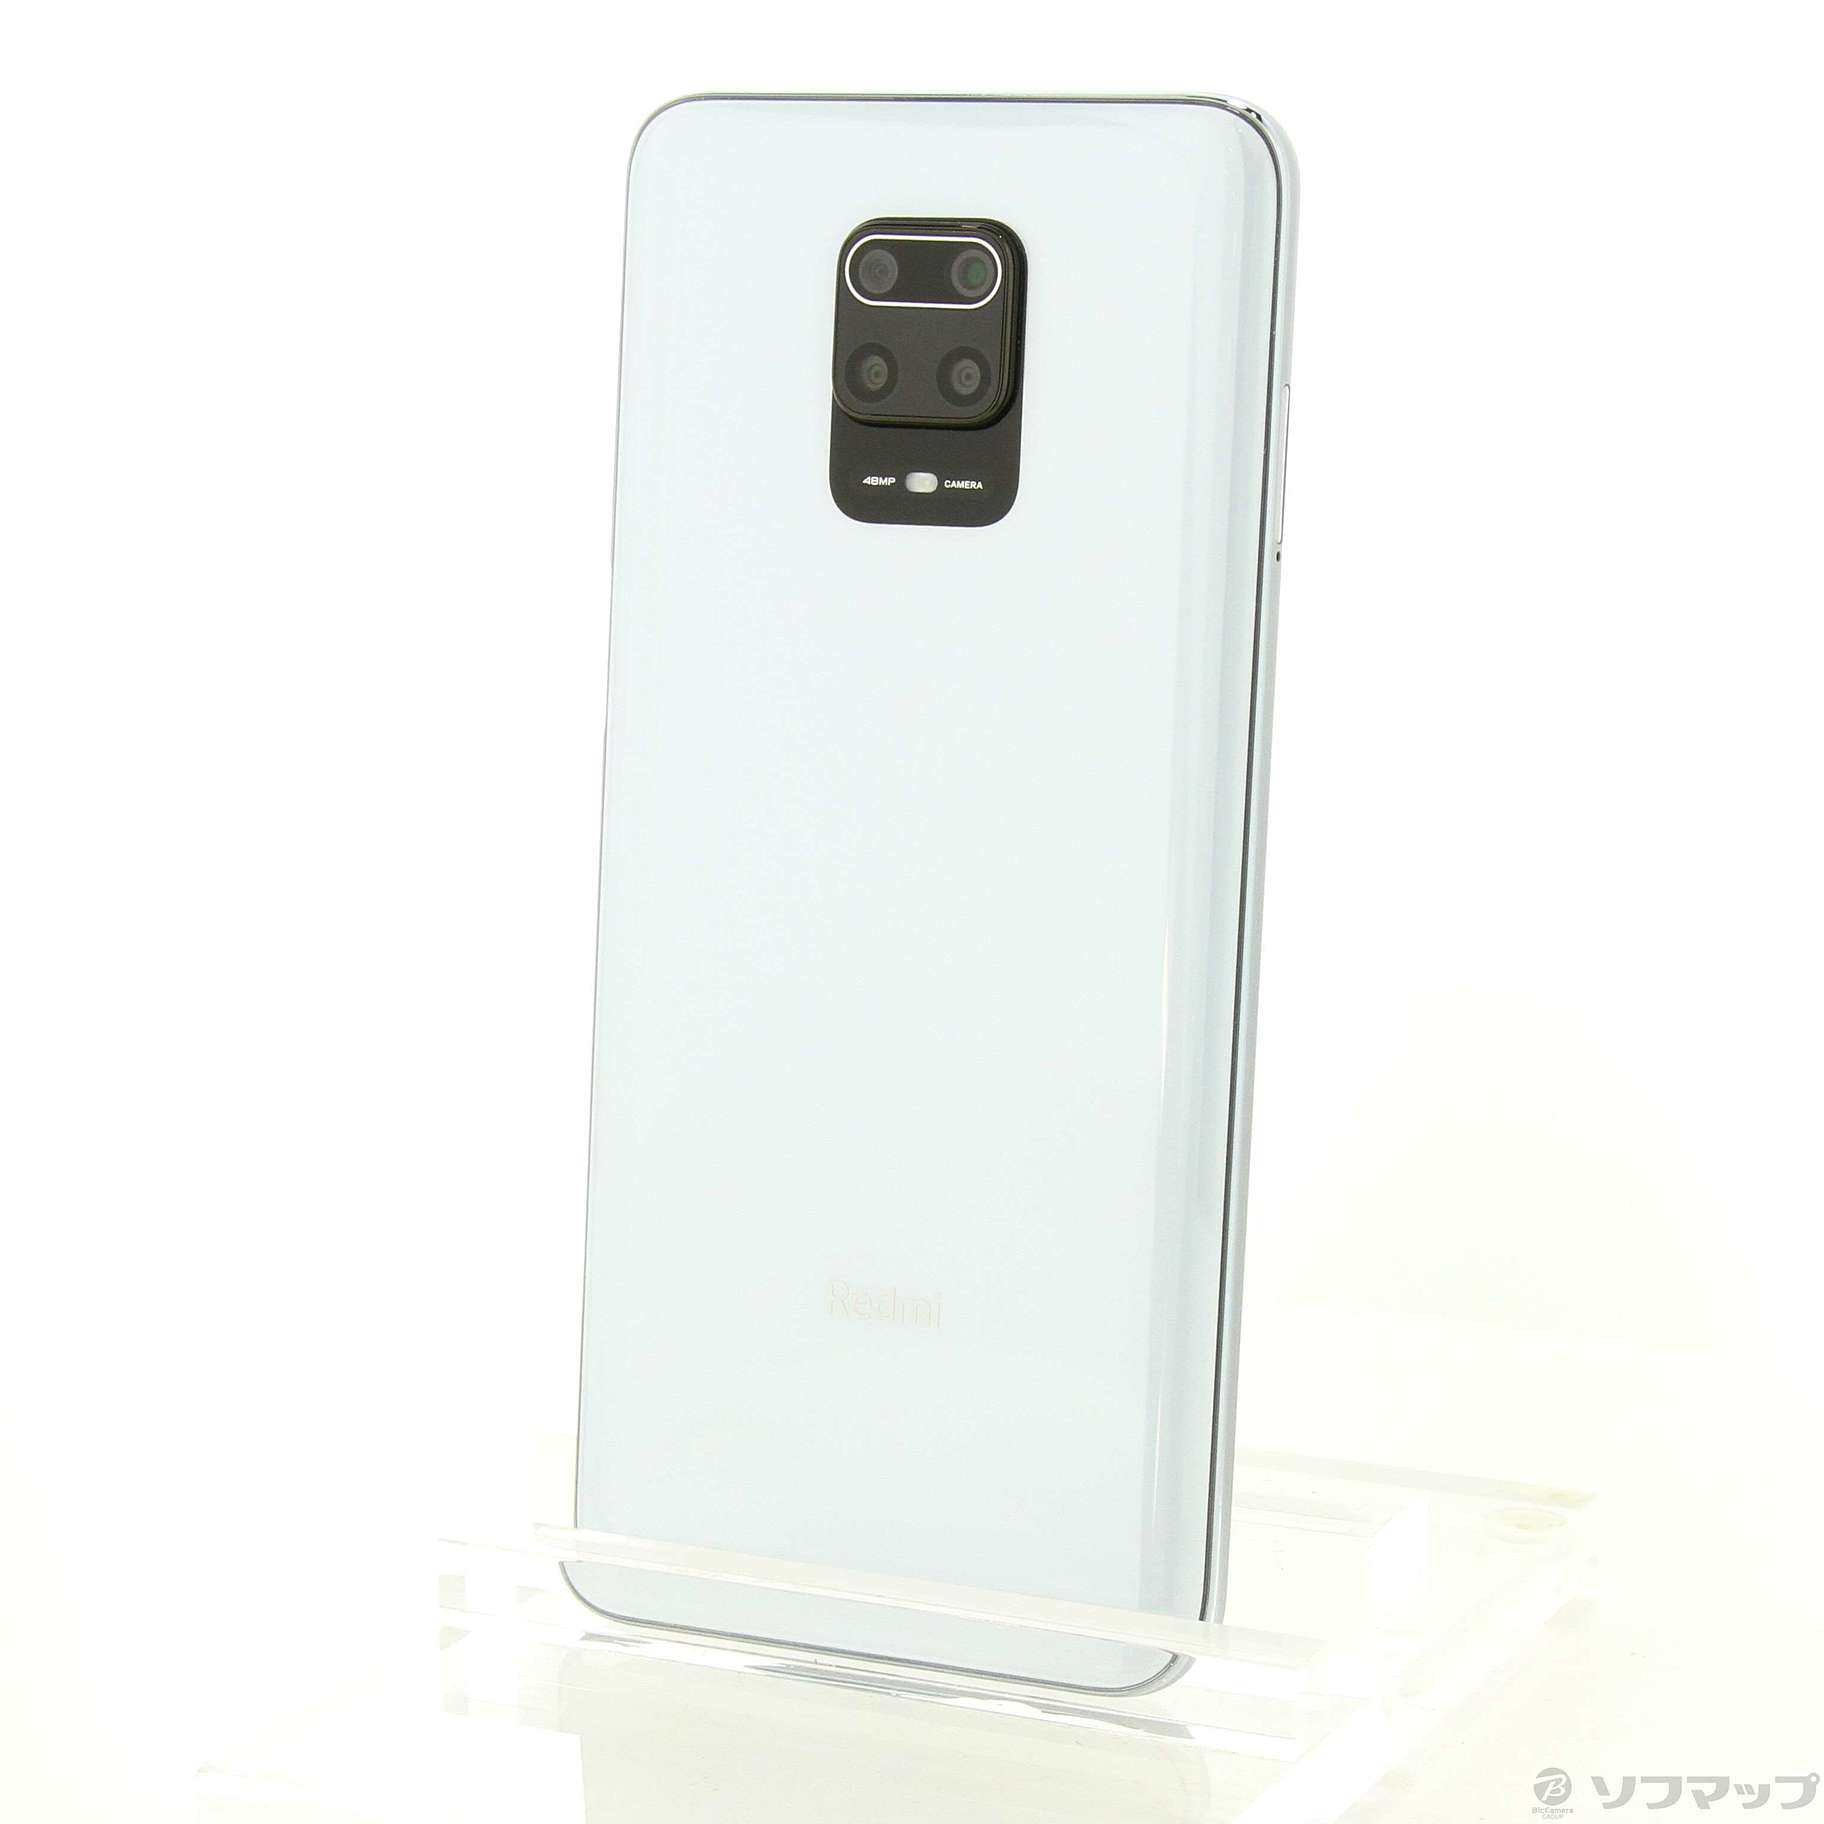 中古】Redmi Note 9S 64GB グレイシャーホワイト REDMI-NOTE9S4-64WH ...